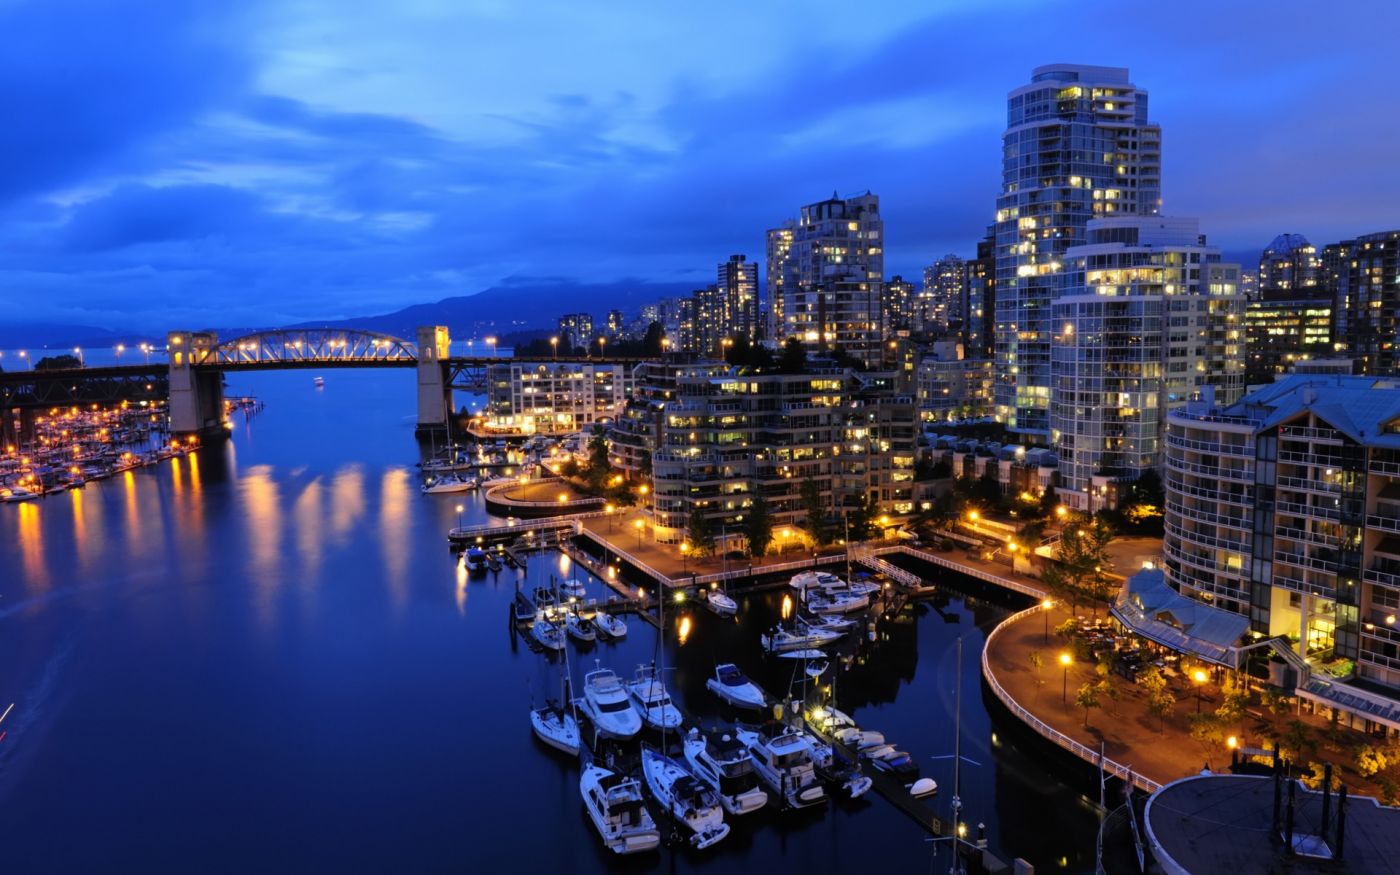 2023年加拿大Top100餐厅 温哥华有3家 - 时事新闻 - 温哥华天空 - Vansky